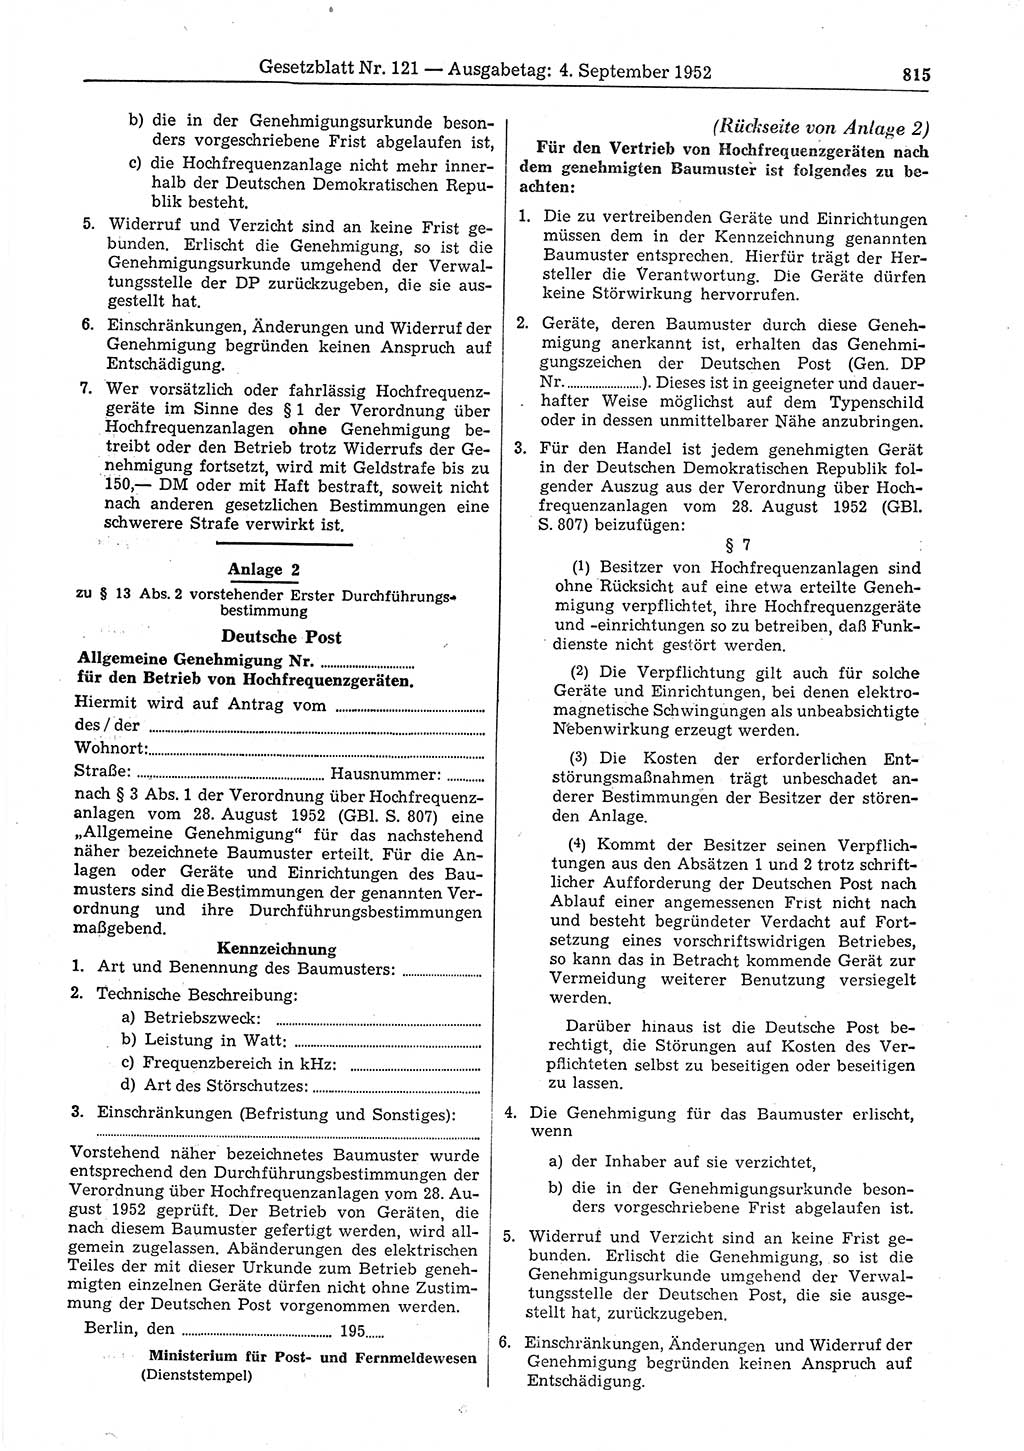 Gesetzblatt (GBl.) der Deutschen Demokratischen Republik (DDR) 1952, Seite 815 (GBl. DDR 1952, S. 815)